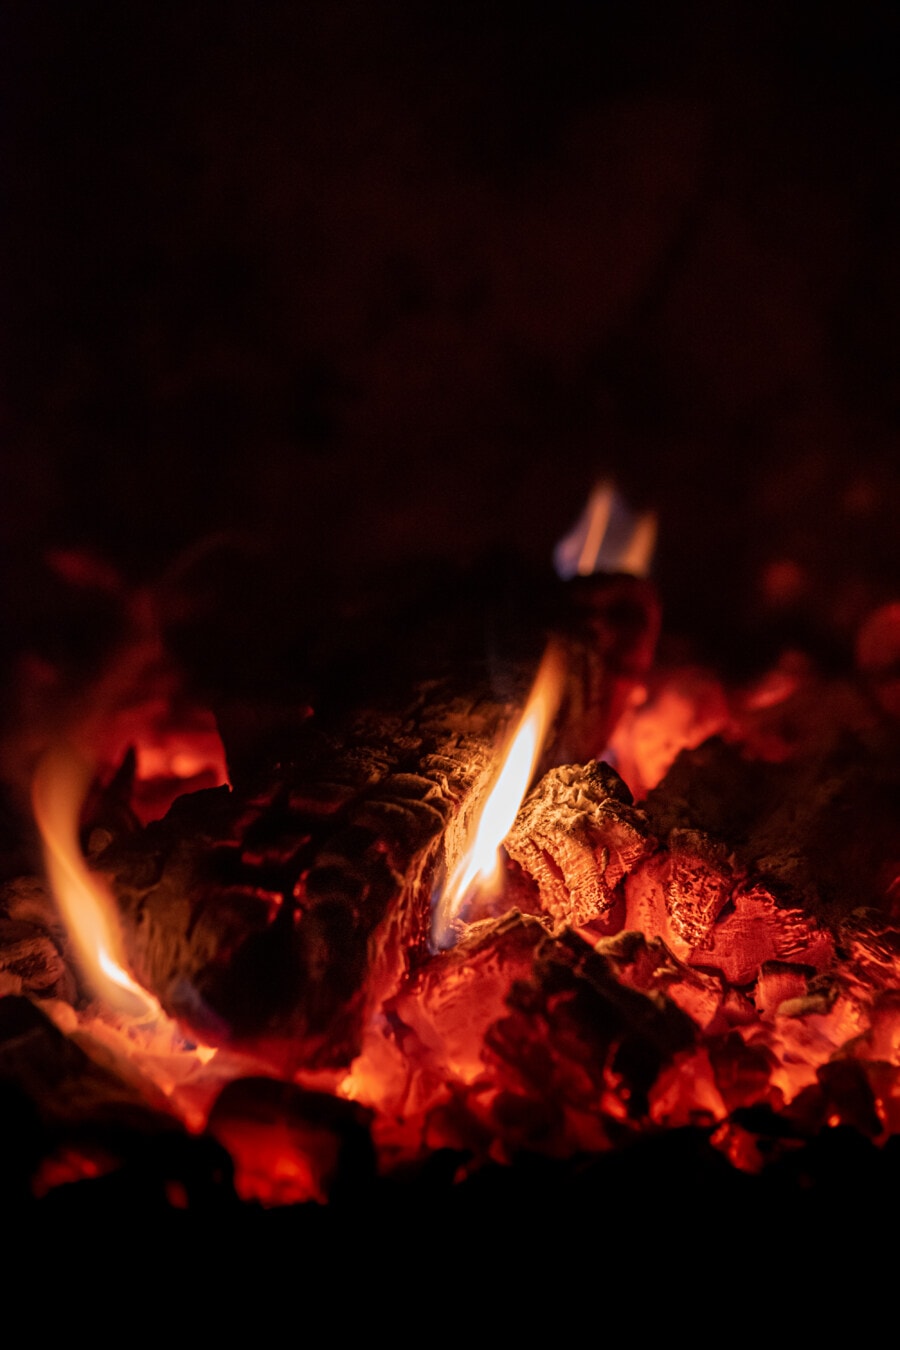 Kamin, Lagerfeuer, Feuer, Brennen, Licht, Wärme, heiß, warm, Kohle, Feuer